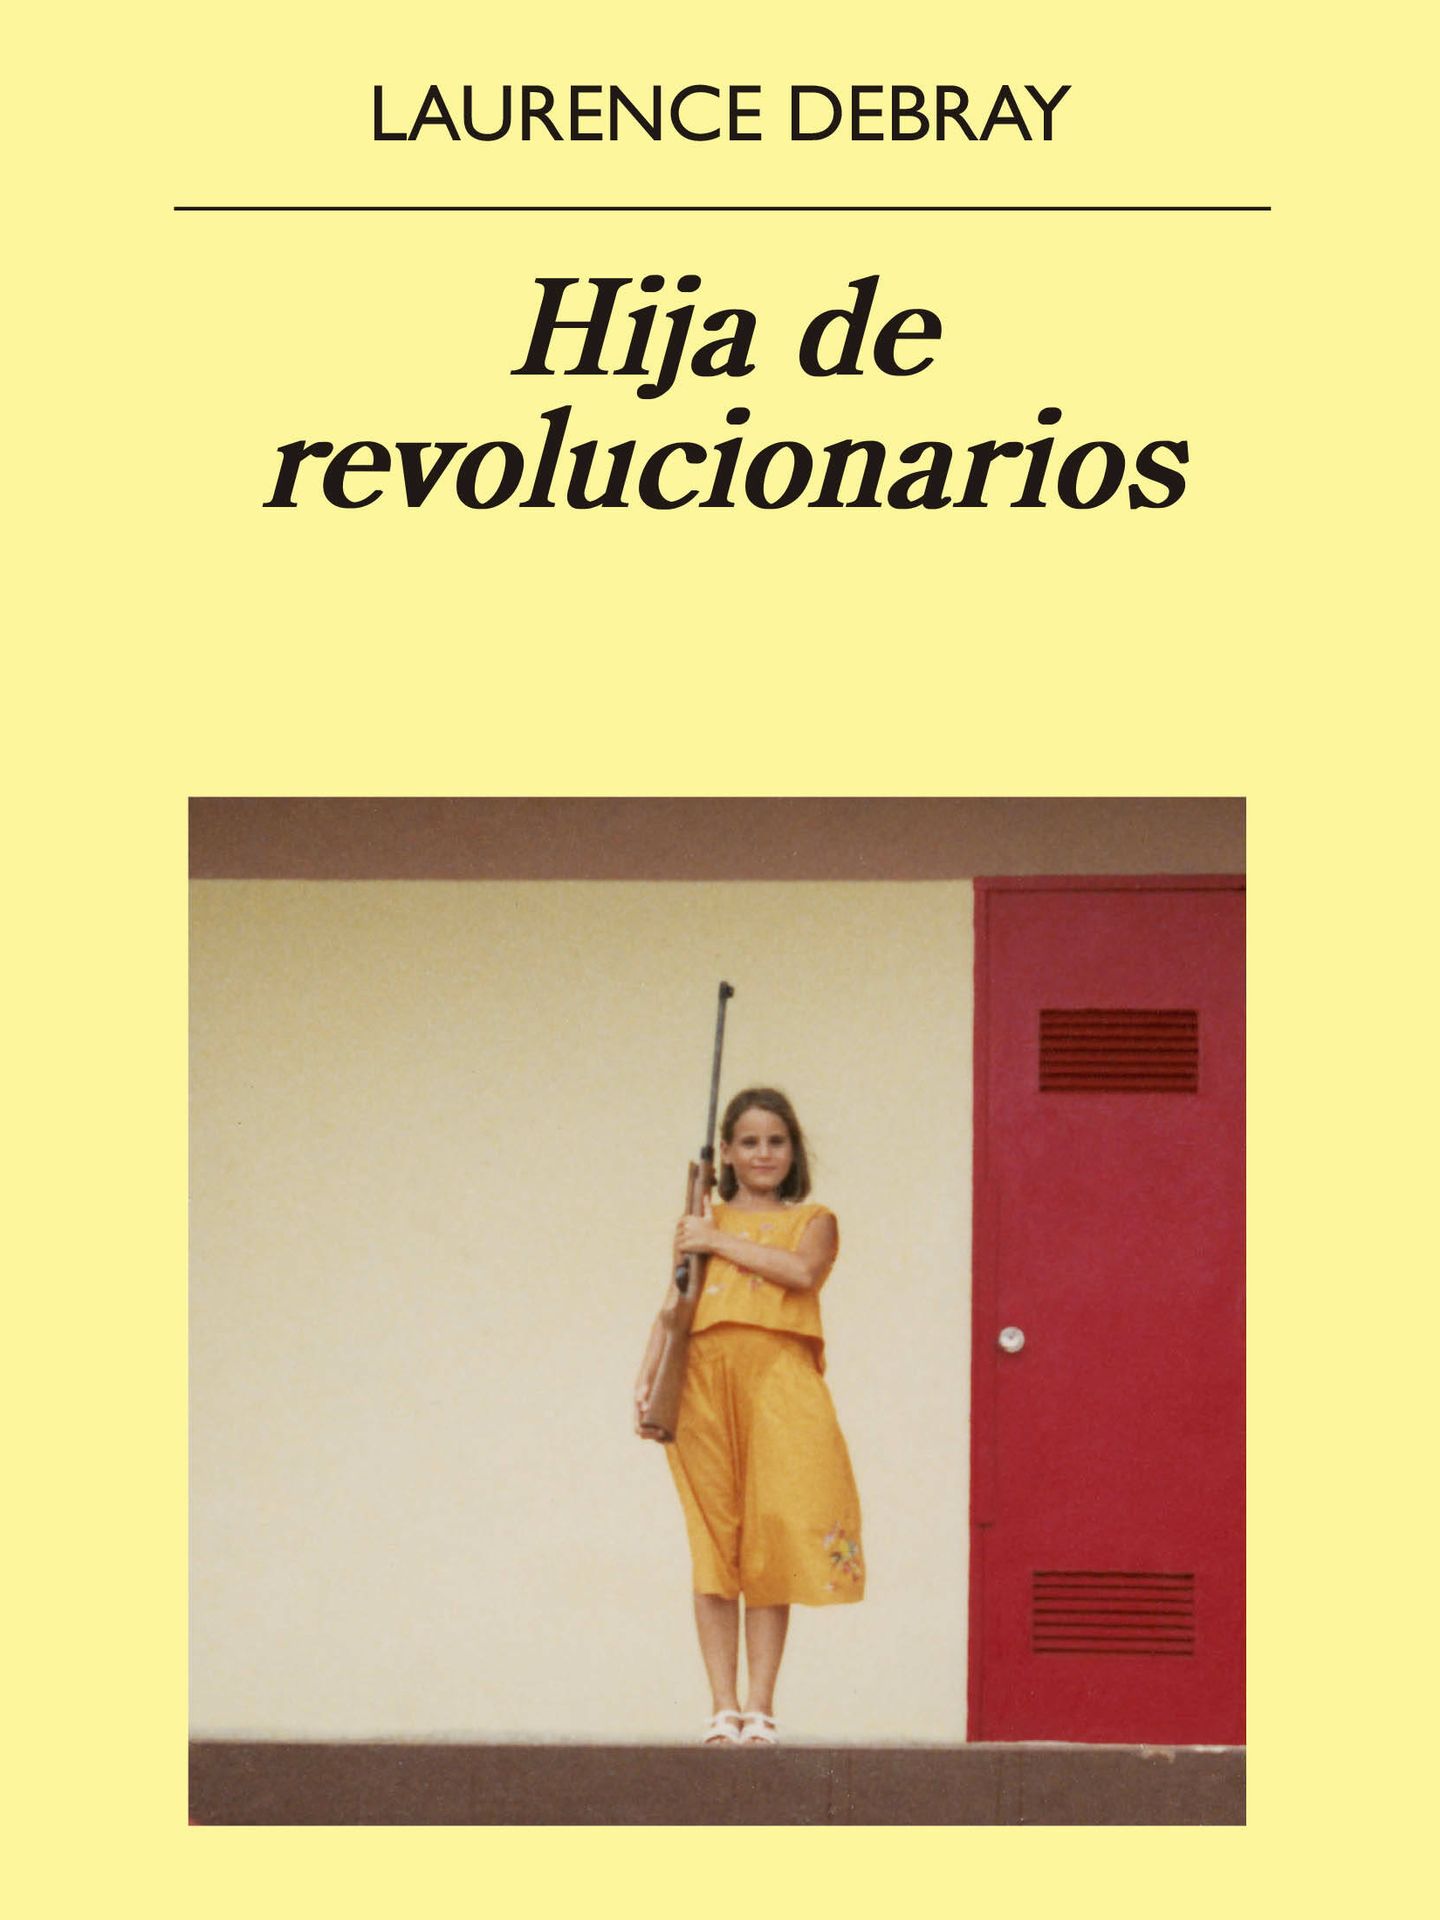 'Hija de revolucionarios', Laurence Debray. (Anagrama)